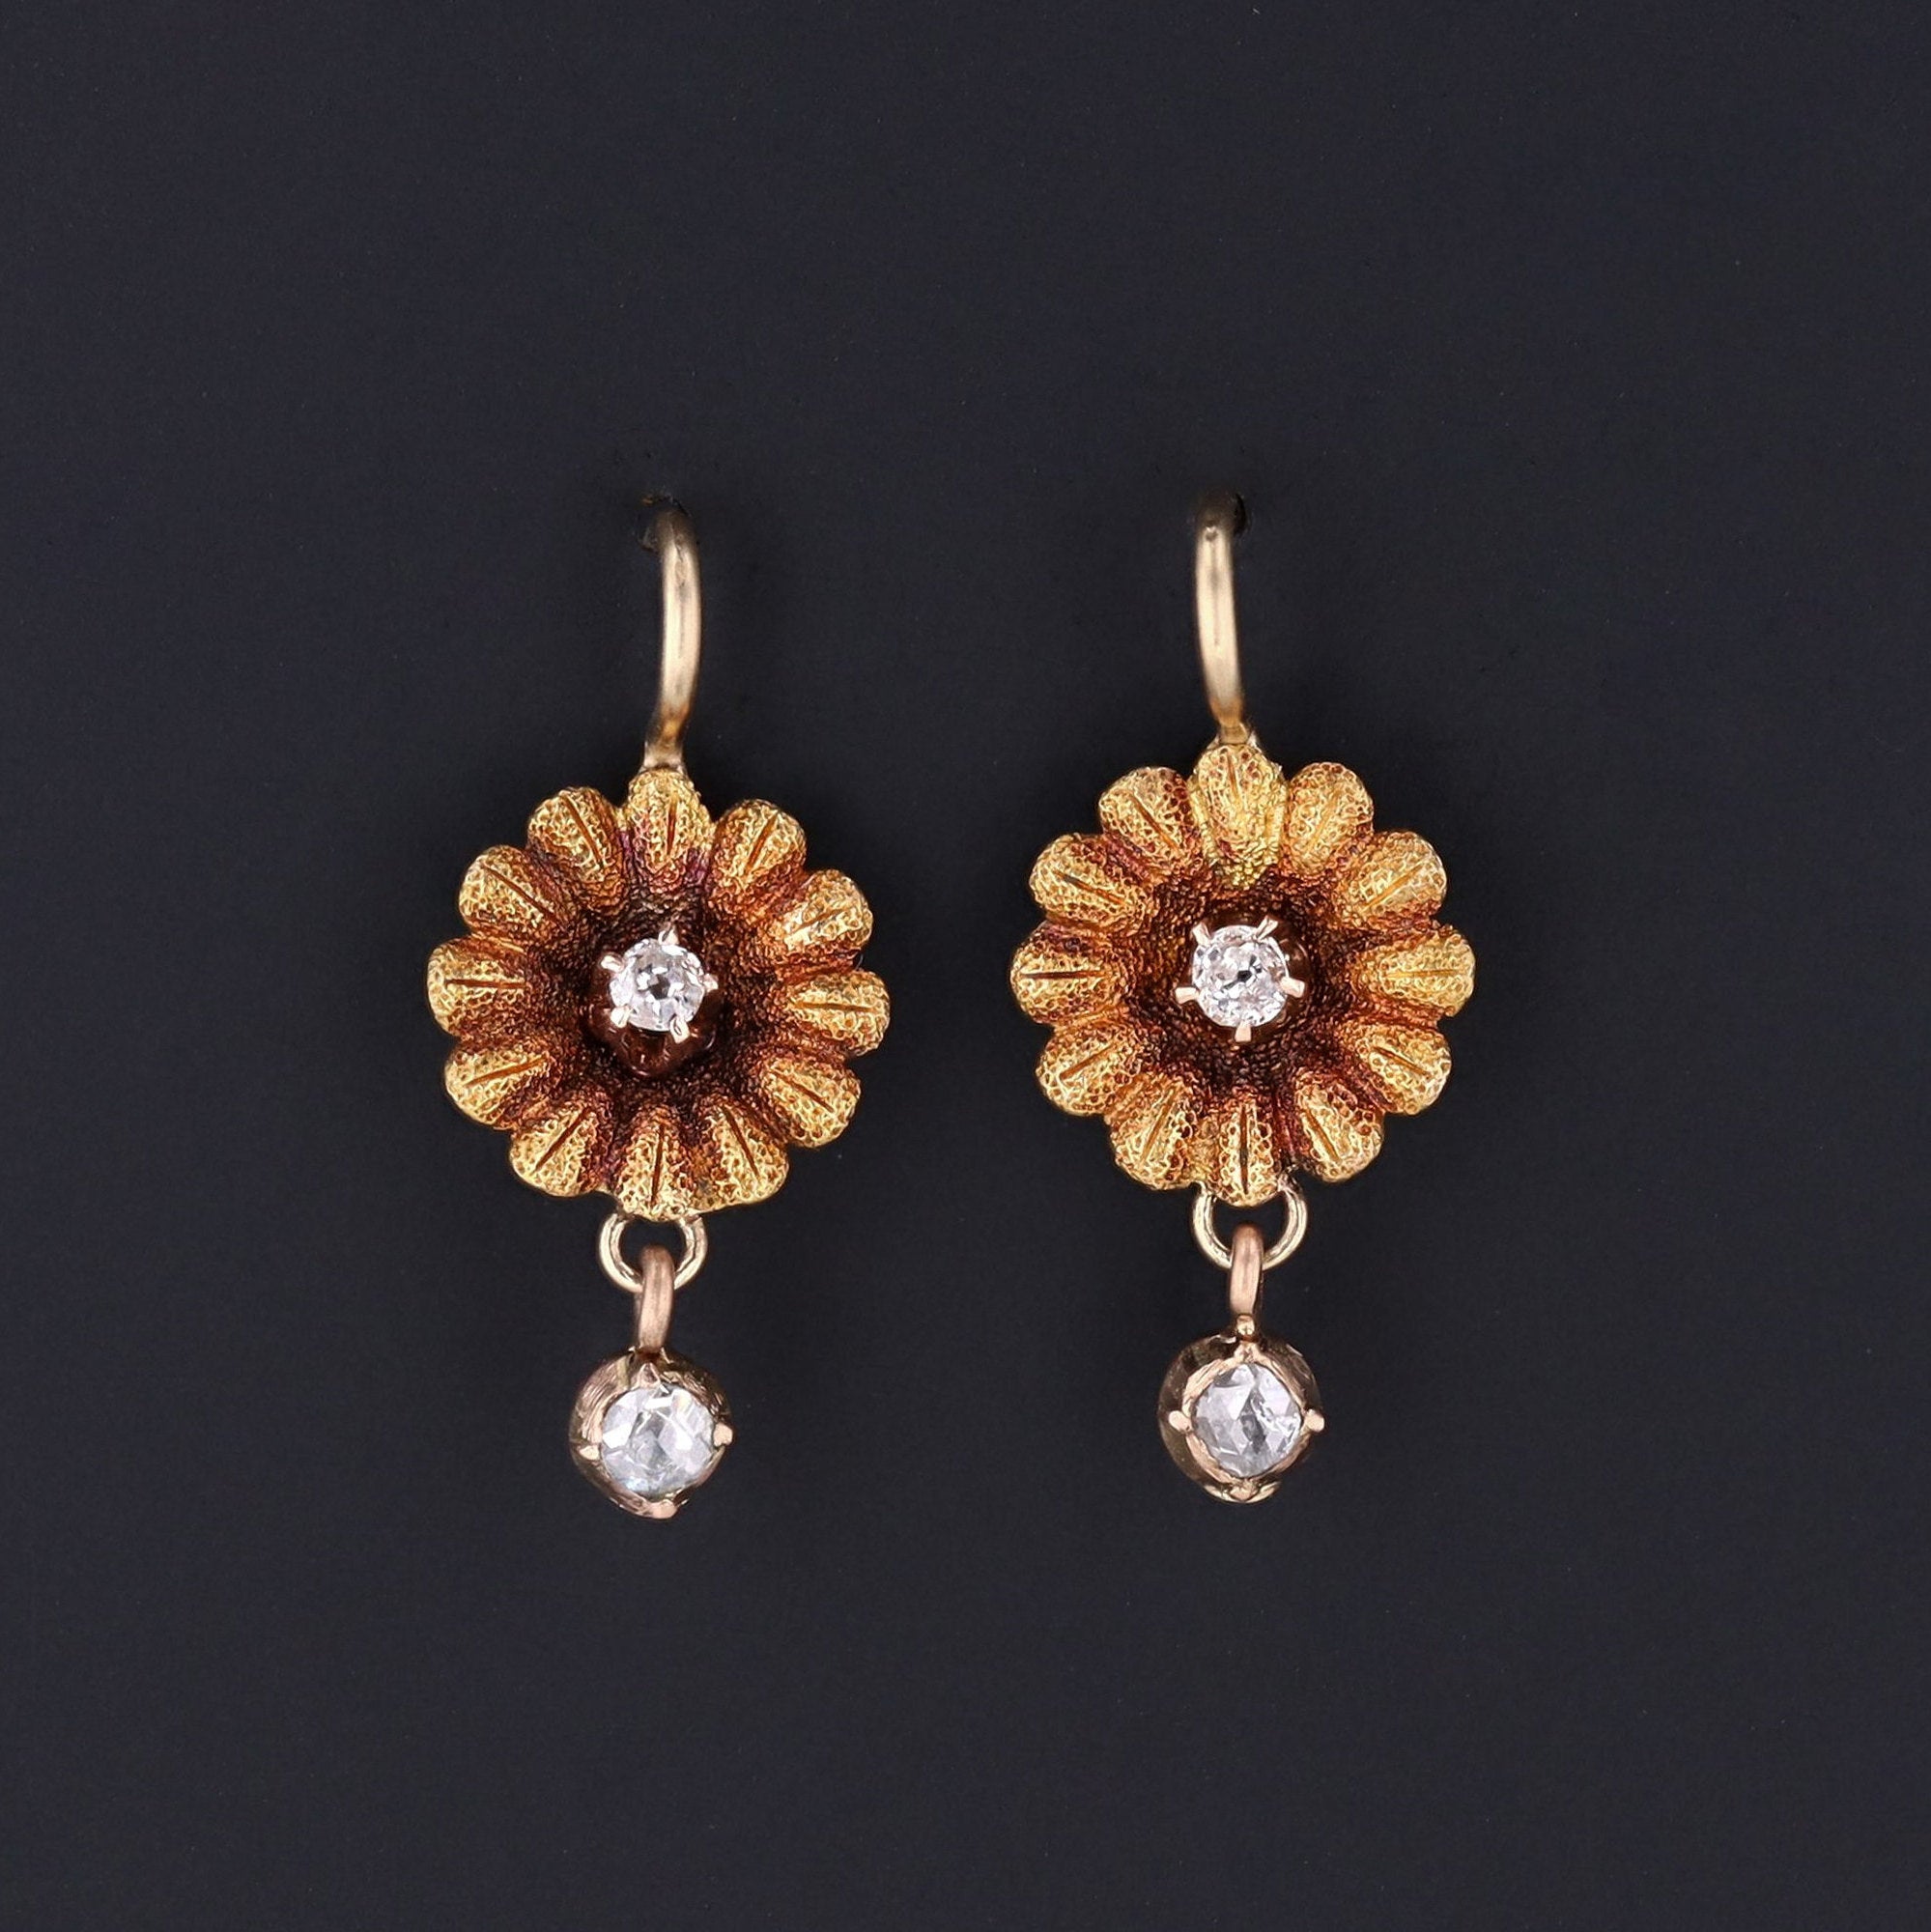 Daisy Earrings | Diamond Daisy Earrings | 14k Gold & Diamond Flower Earrings | Antique Pin Conversion Earrings